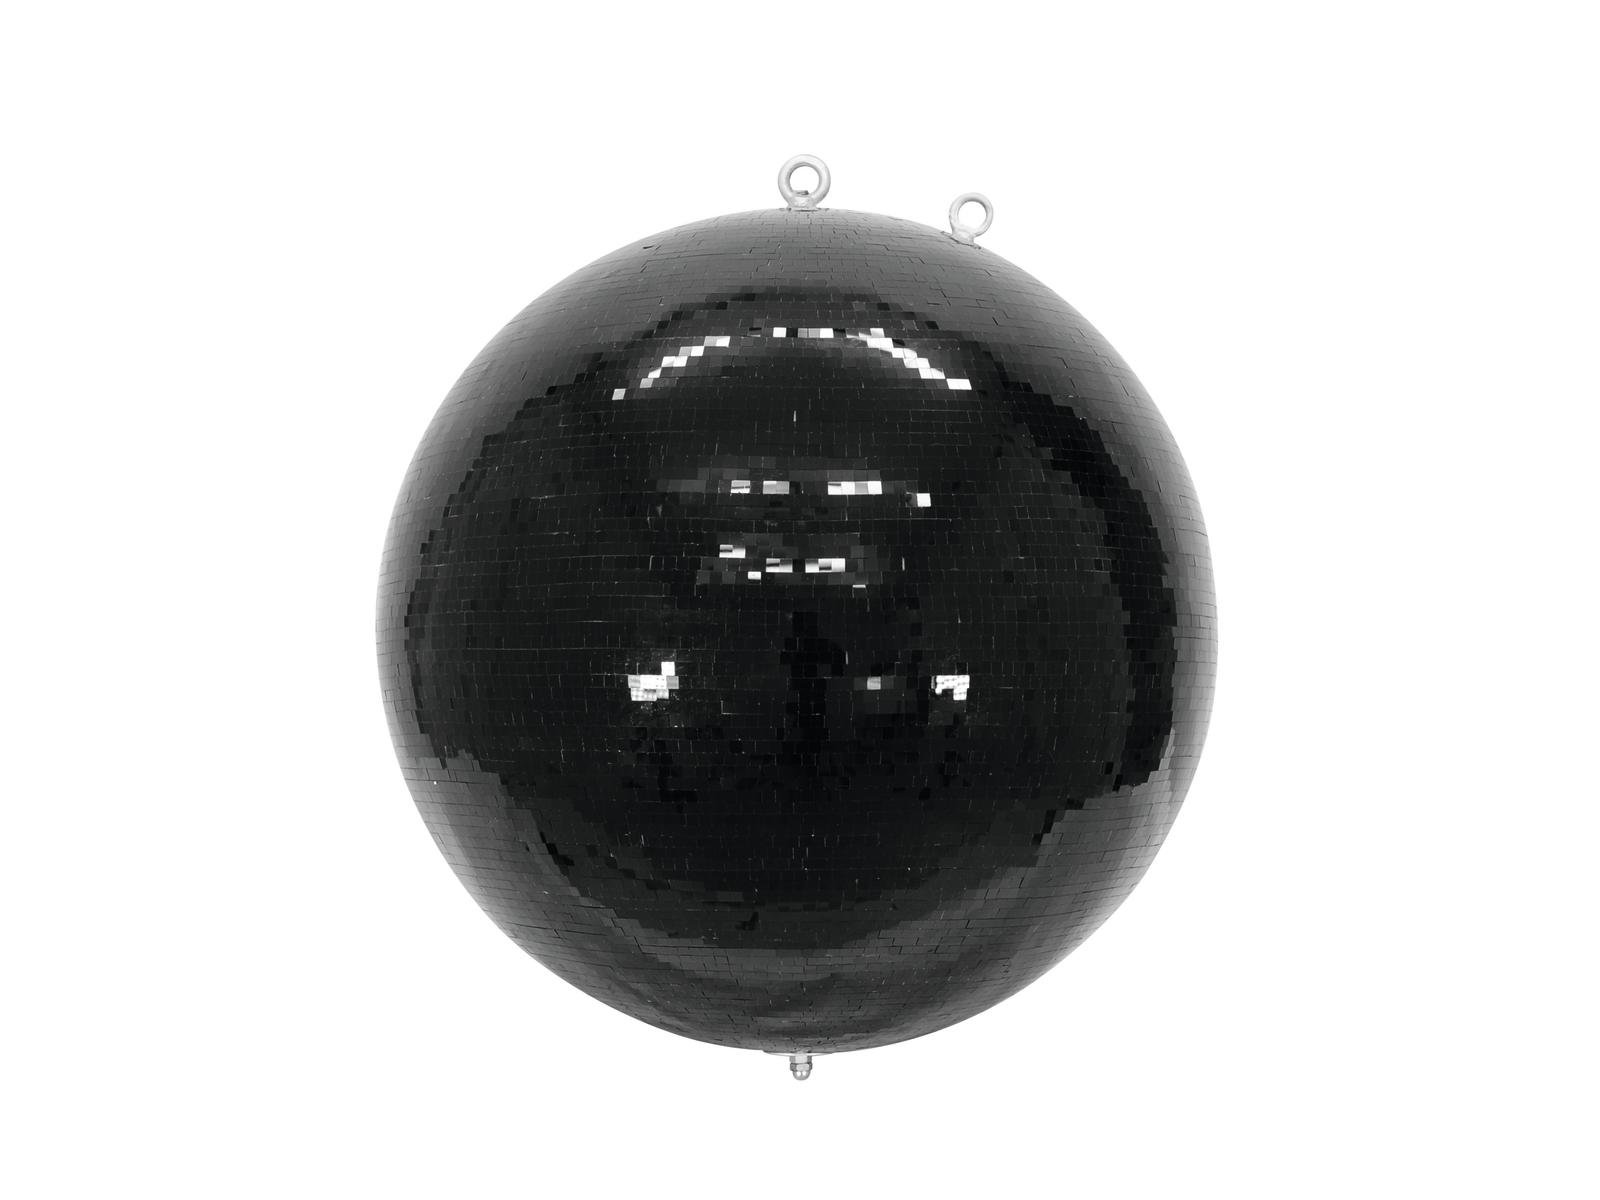 Boule a facette 40 cm noire - AVLS Paris - boule à facettes